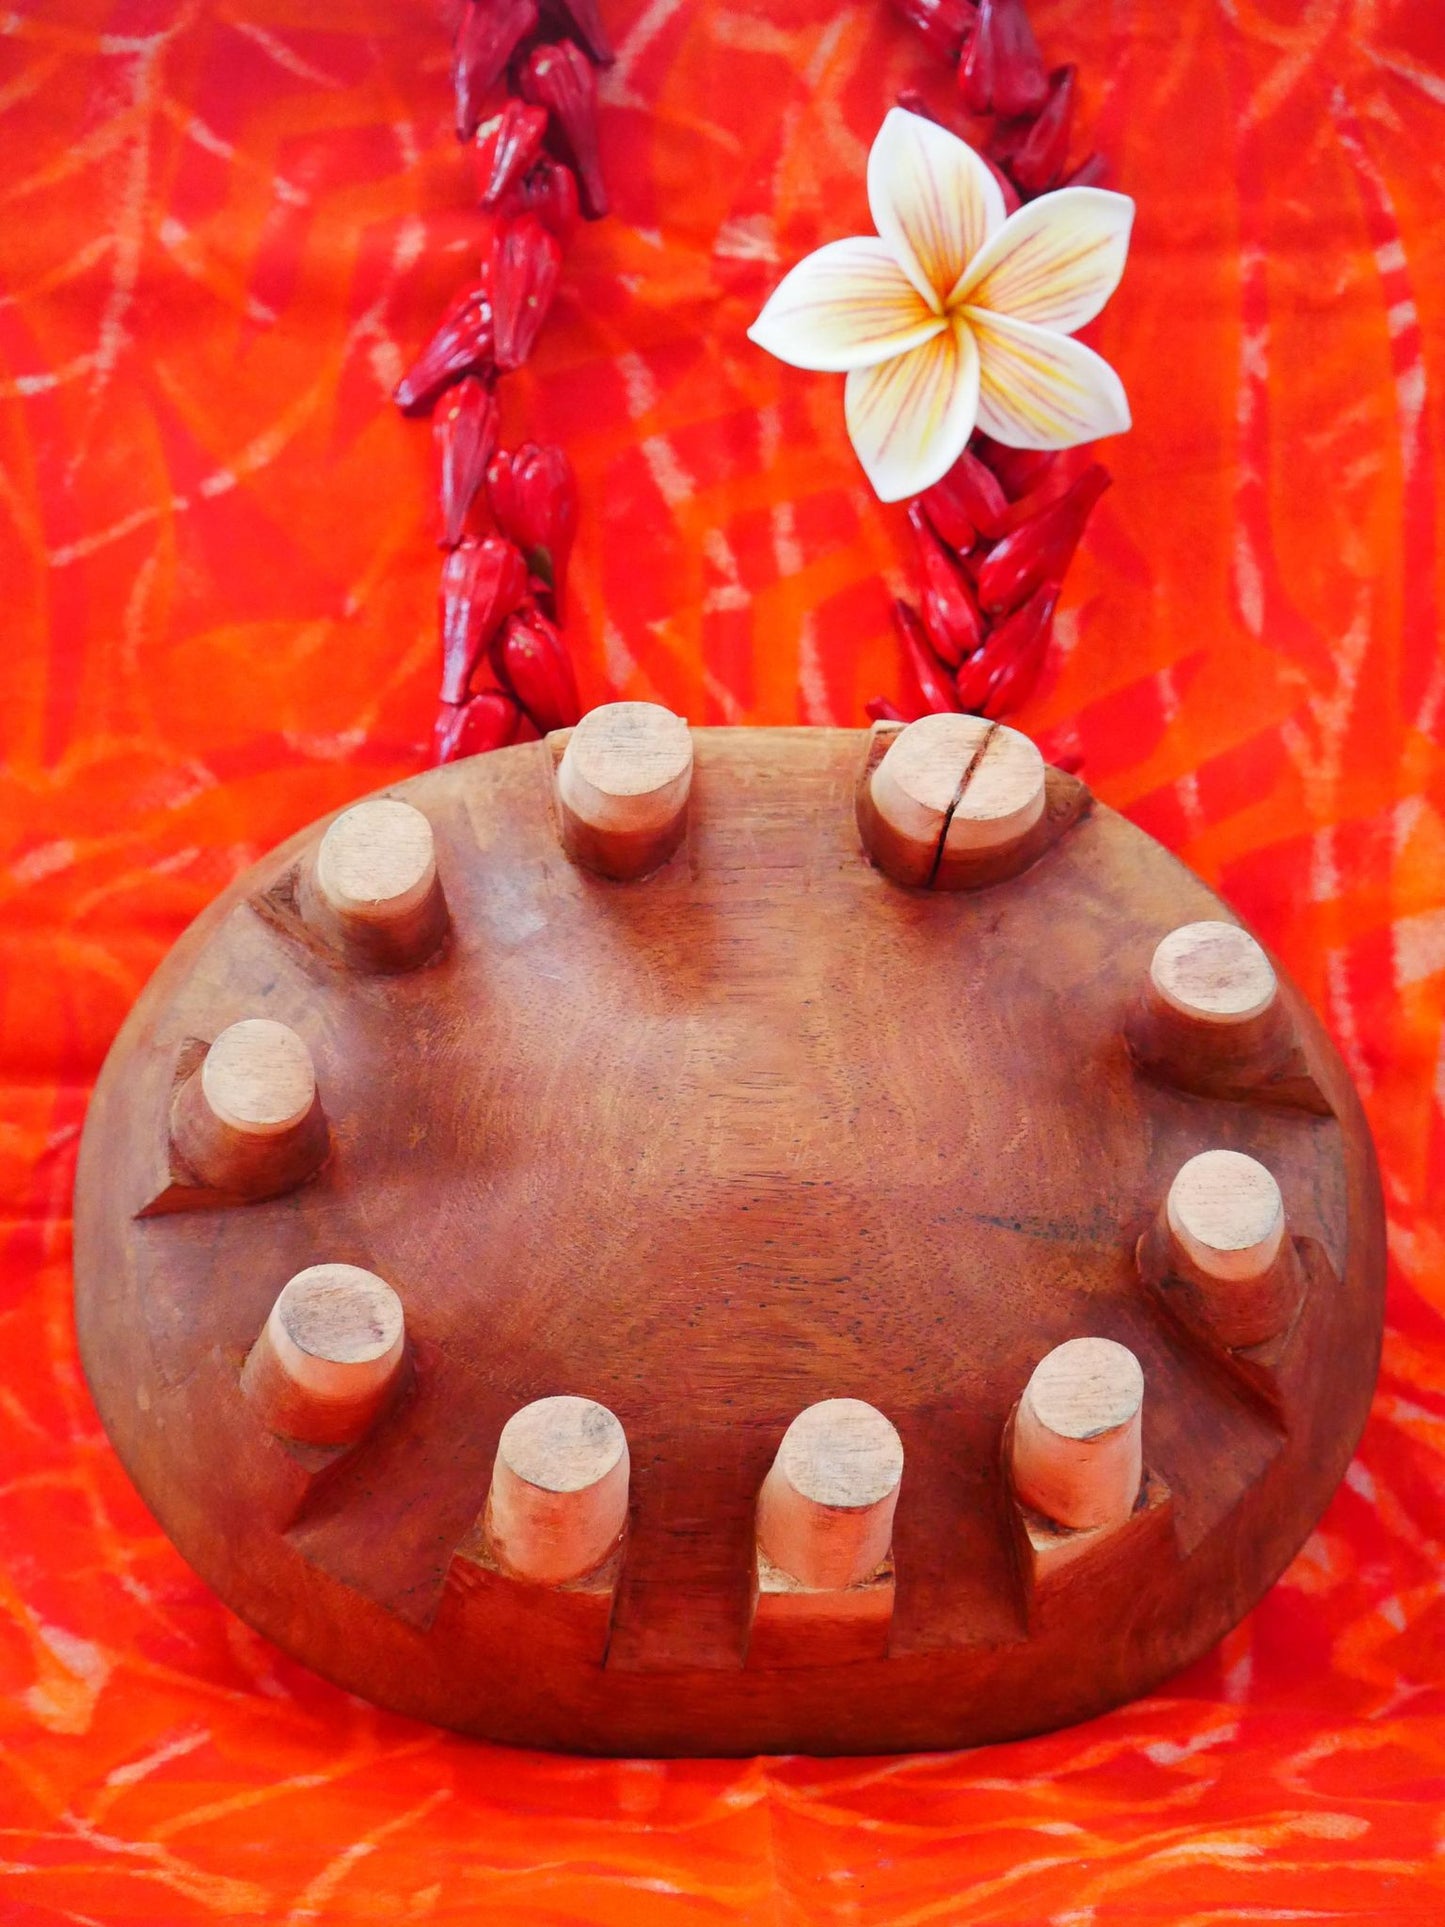 Samoan Tanoa Kava Bowl Medium (11 inch)